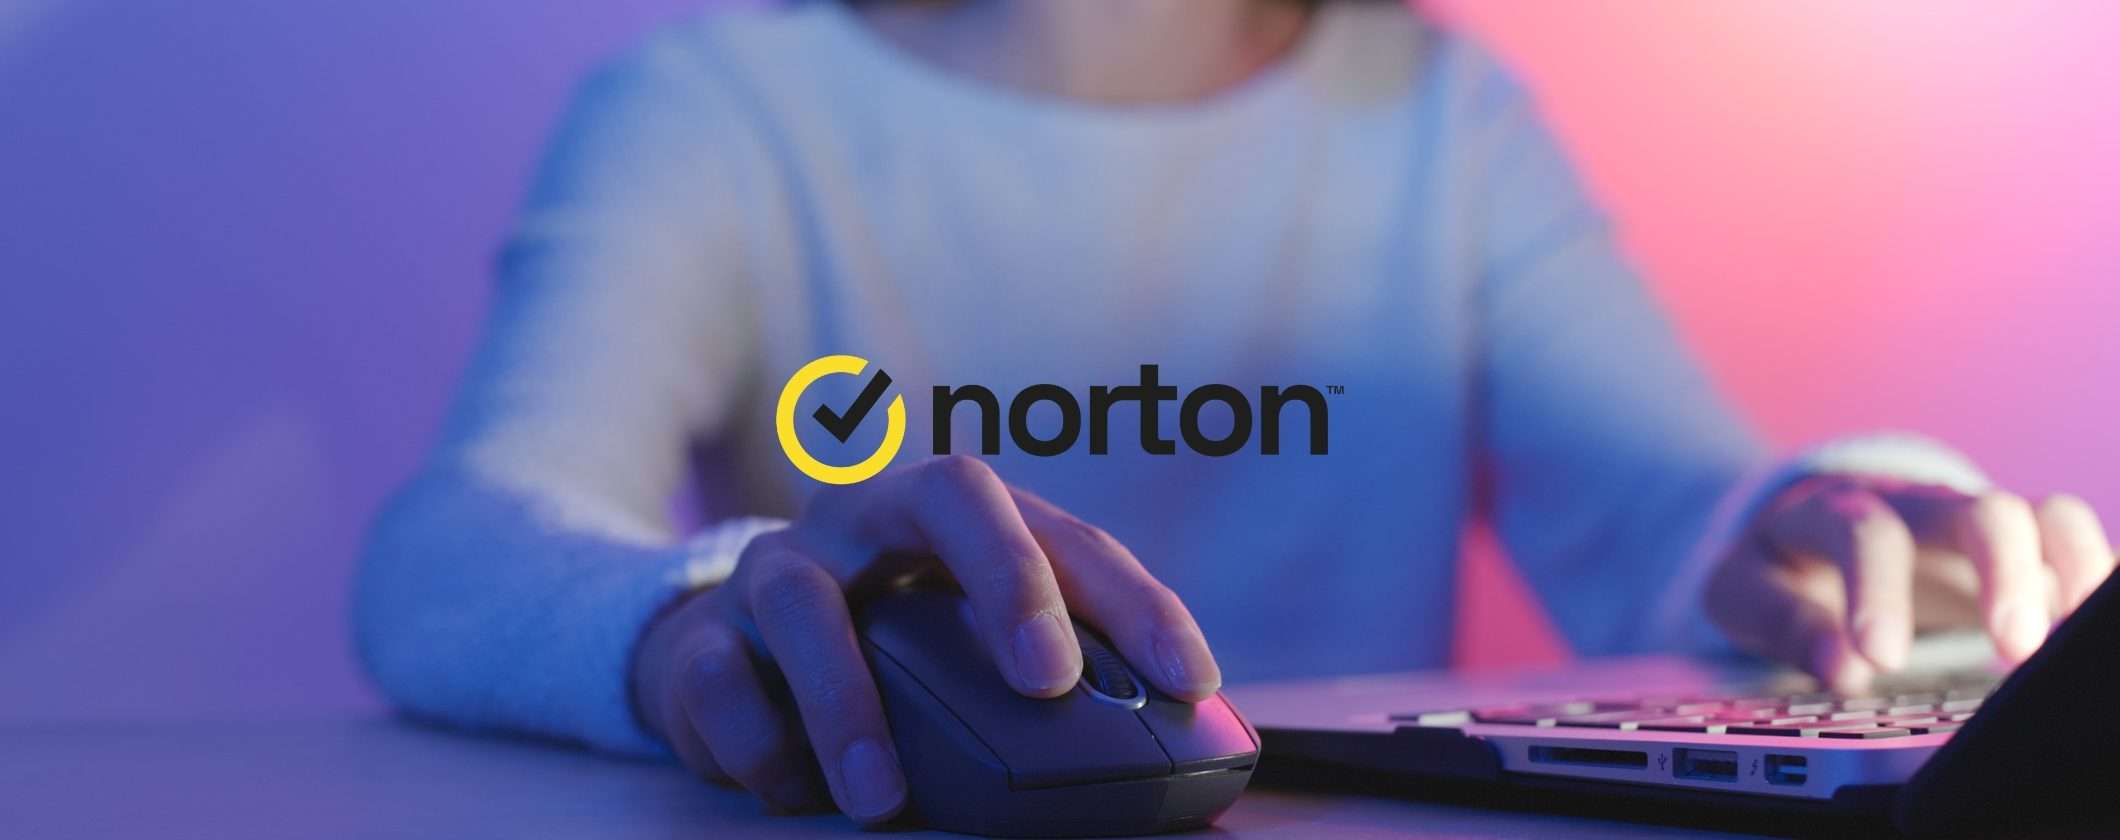 Promozione Norton di febbraio: sconti fino al 70%